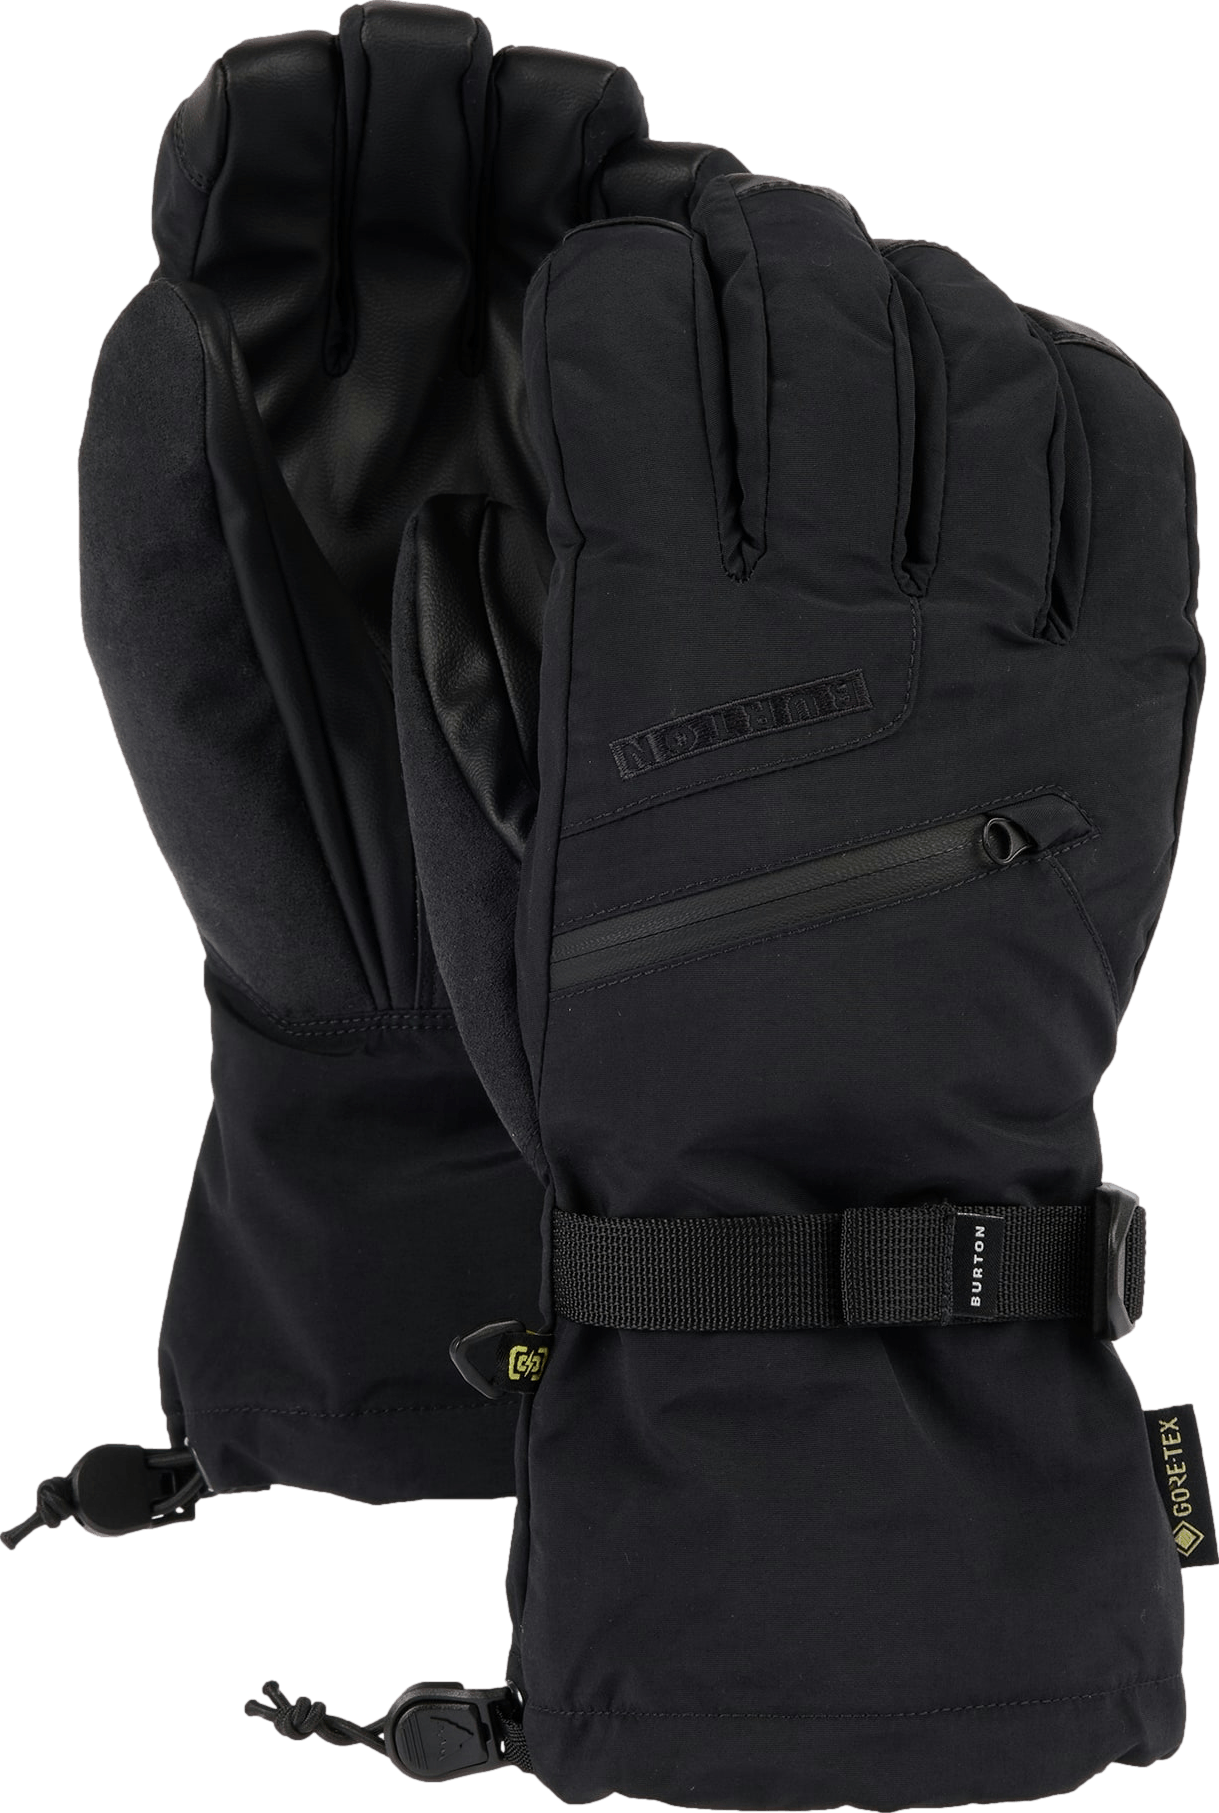 Expert Review: Hestra Women's Heli 3-finger Glove